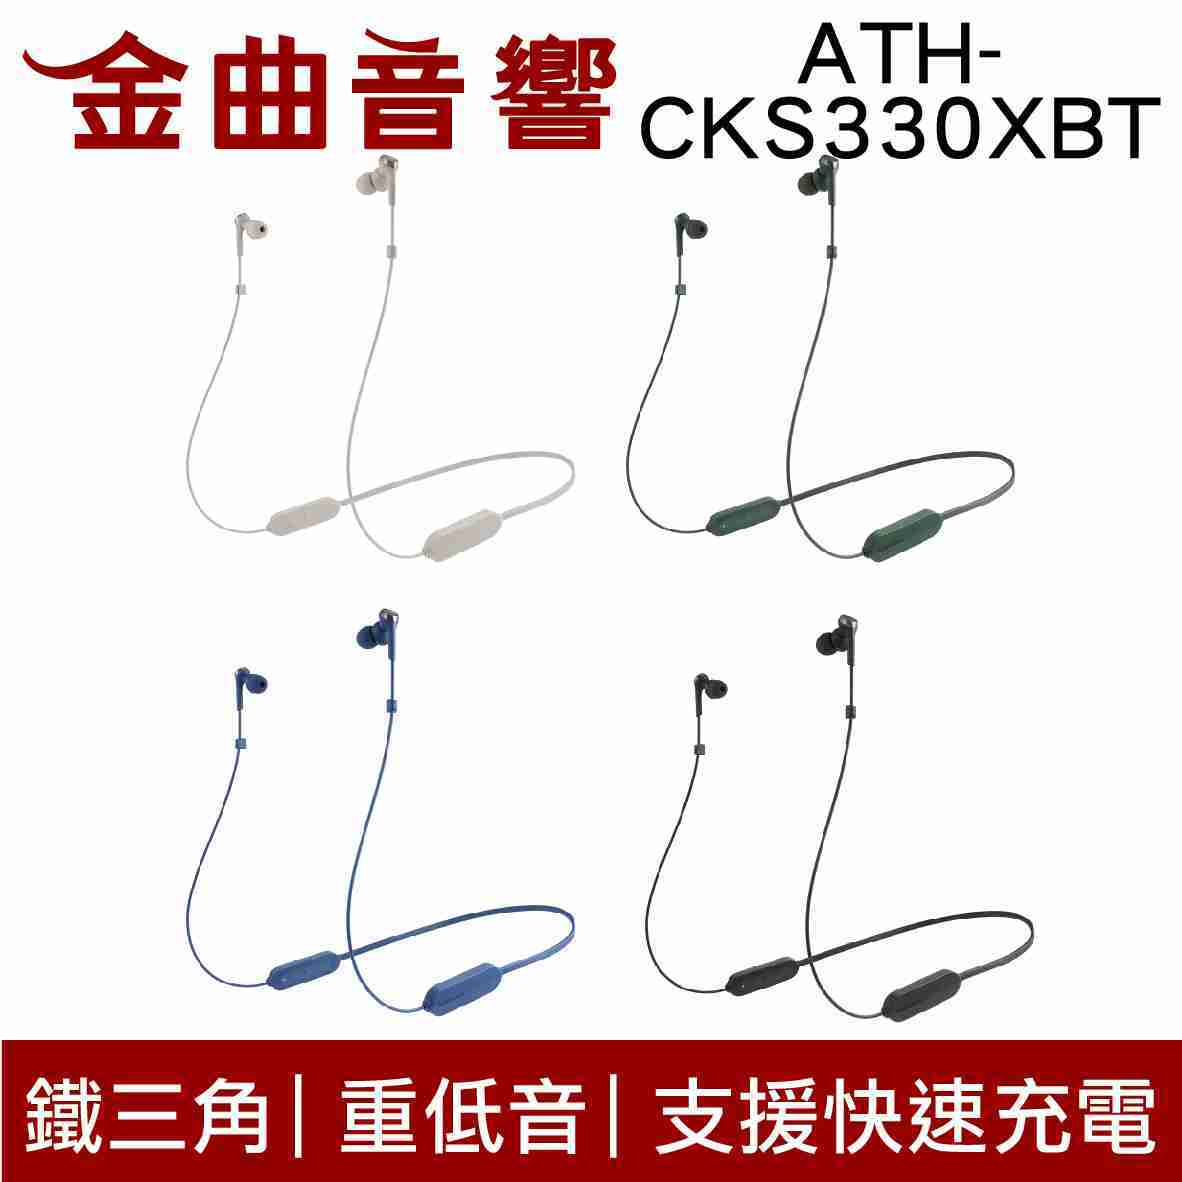 鐵三角 ATH-CKS330XBT 綠 低延遲 無線 藍芽 耳道式耳機 | 金曲音響